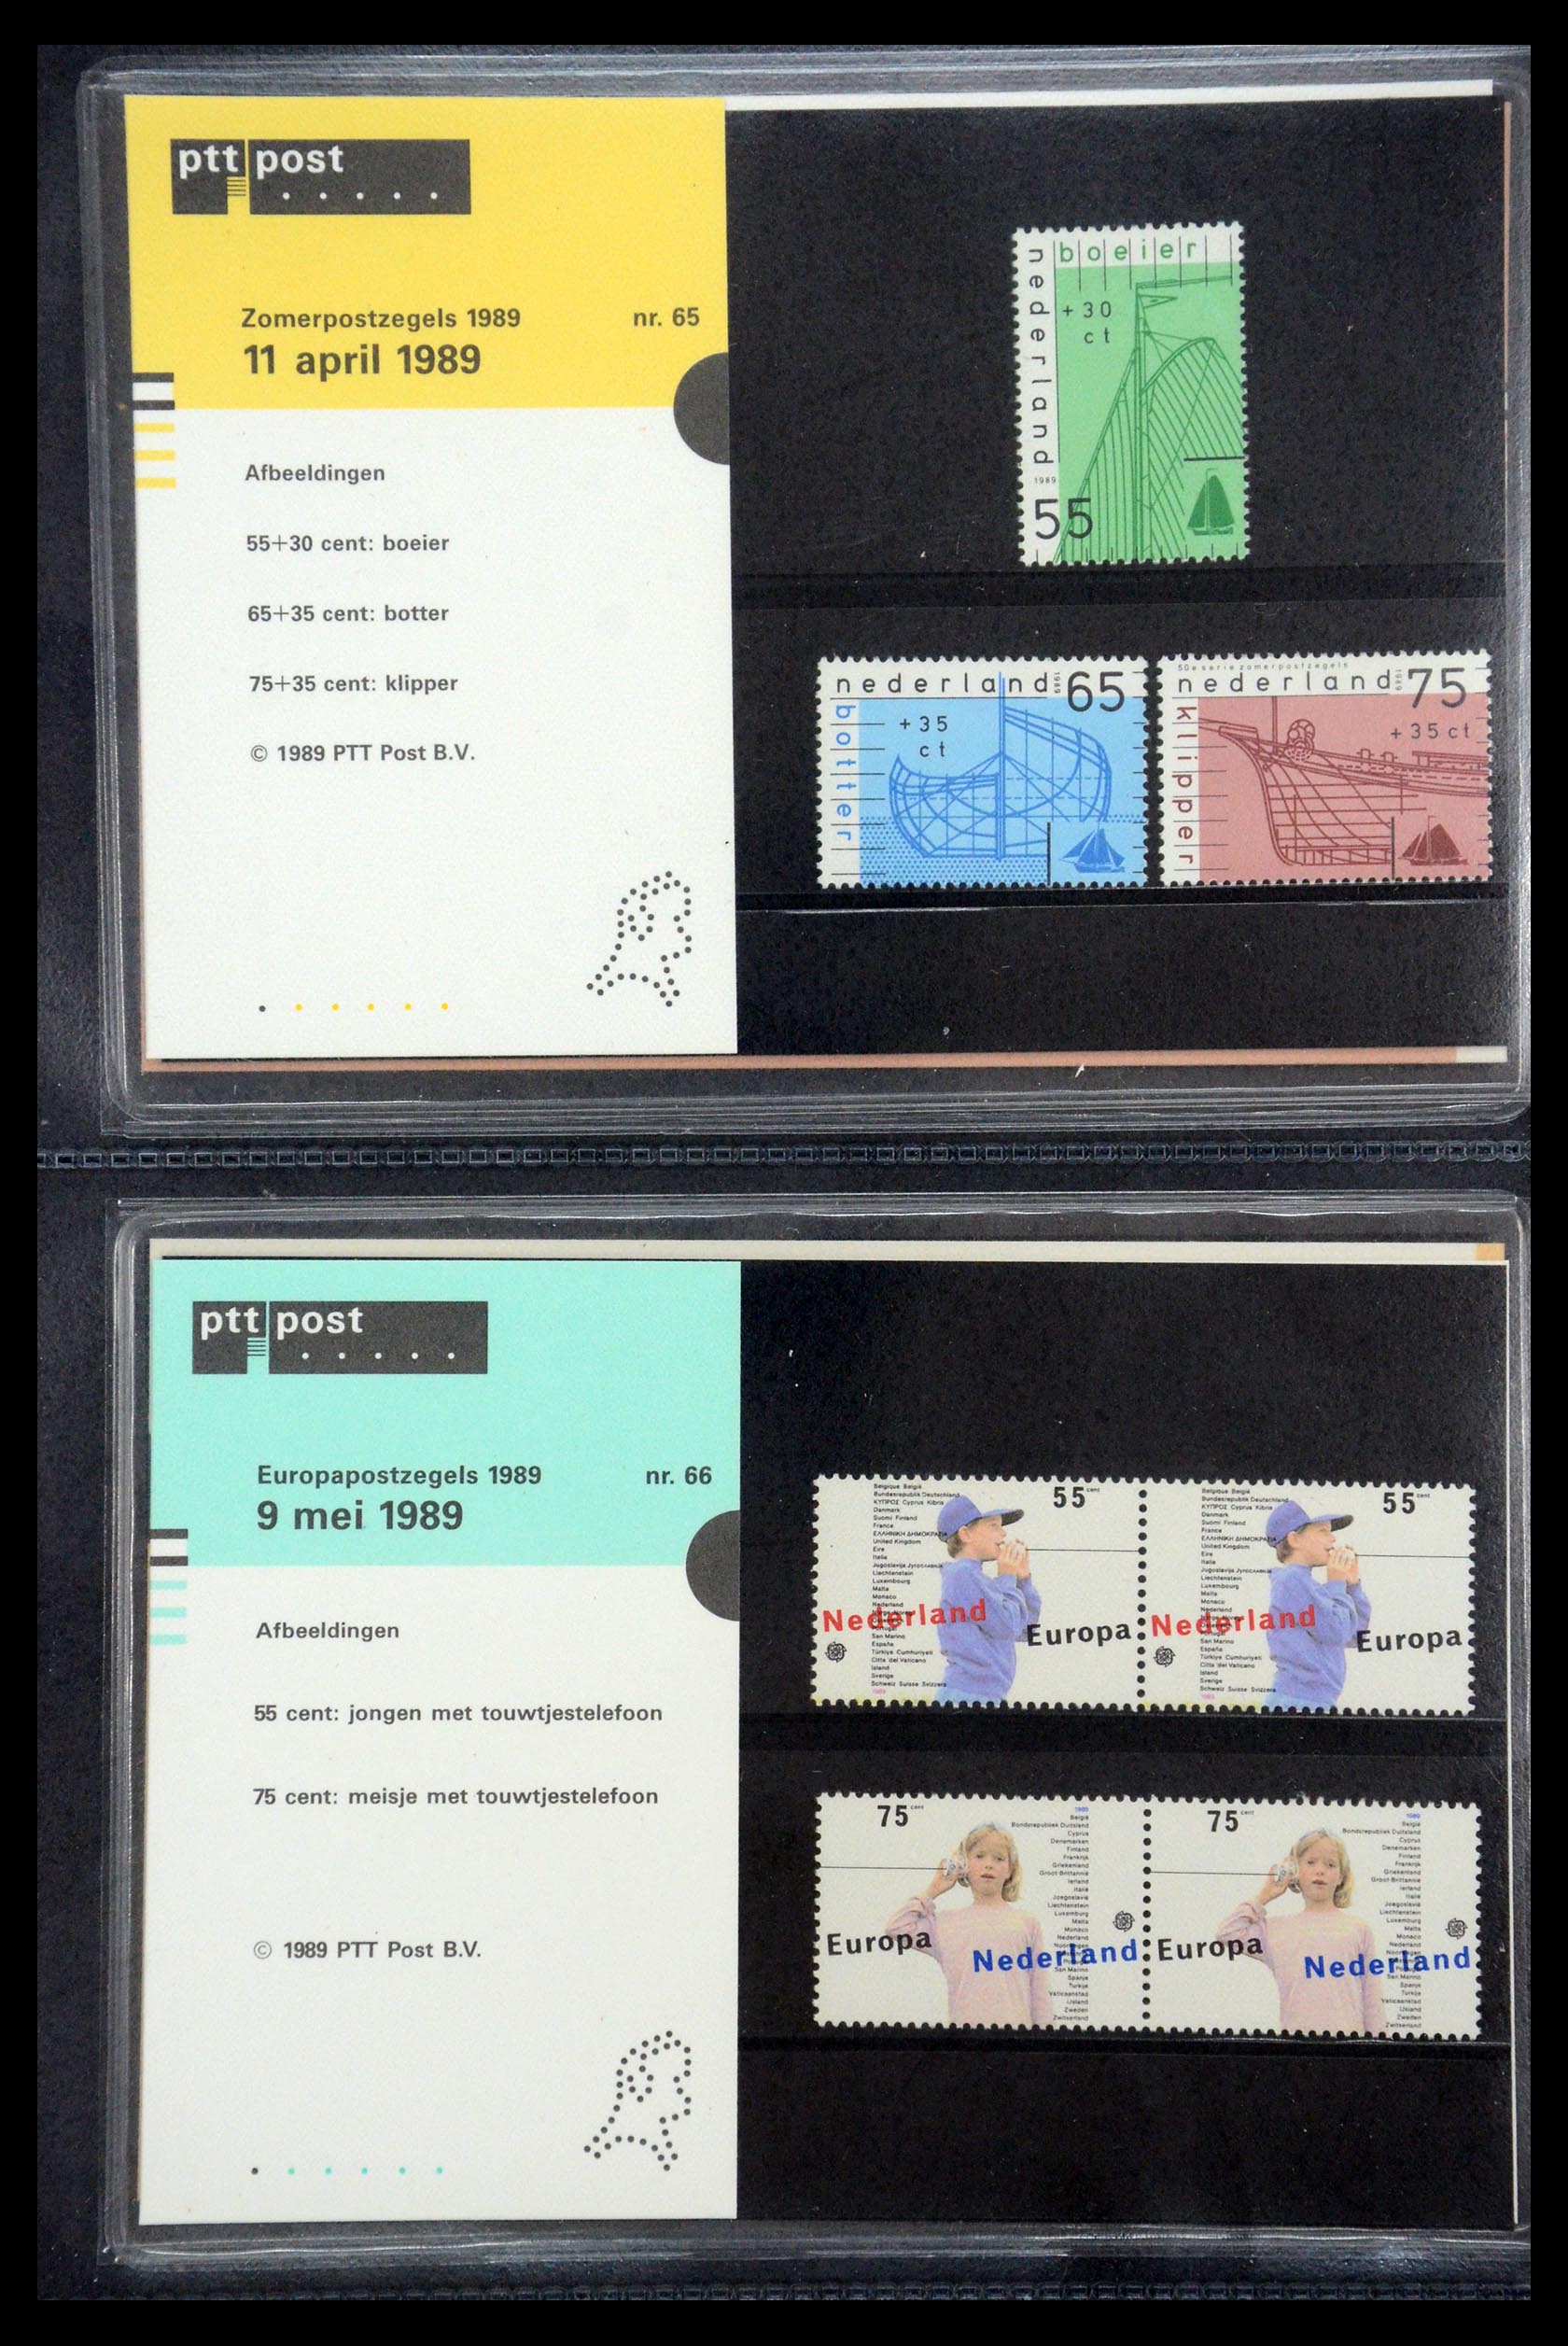 35187 033 - Stamp Collection 35187 Netherlands PTT presentation packs 1982-2019!